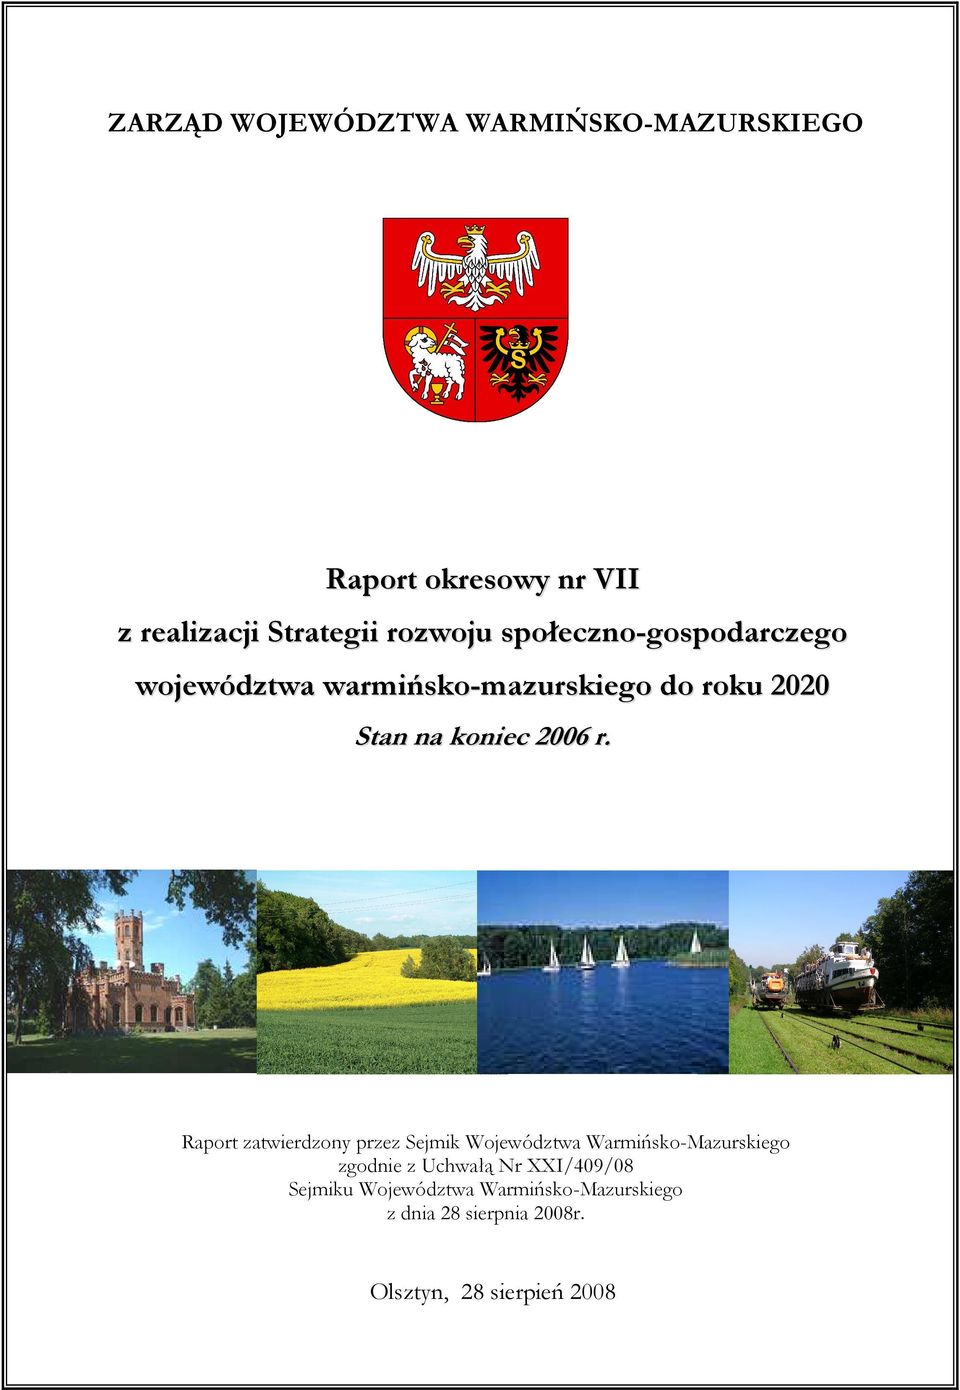 Raport zatwierdzony przez Sejmik Województwa Warmińsko-Mazurskiego zgodnie z Uchwałą Nr